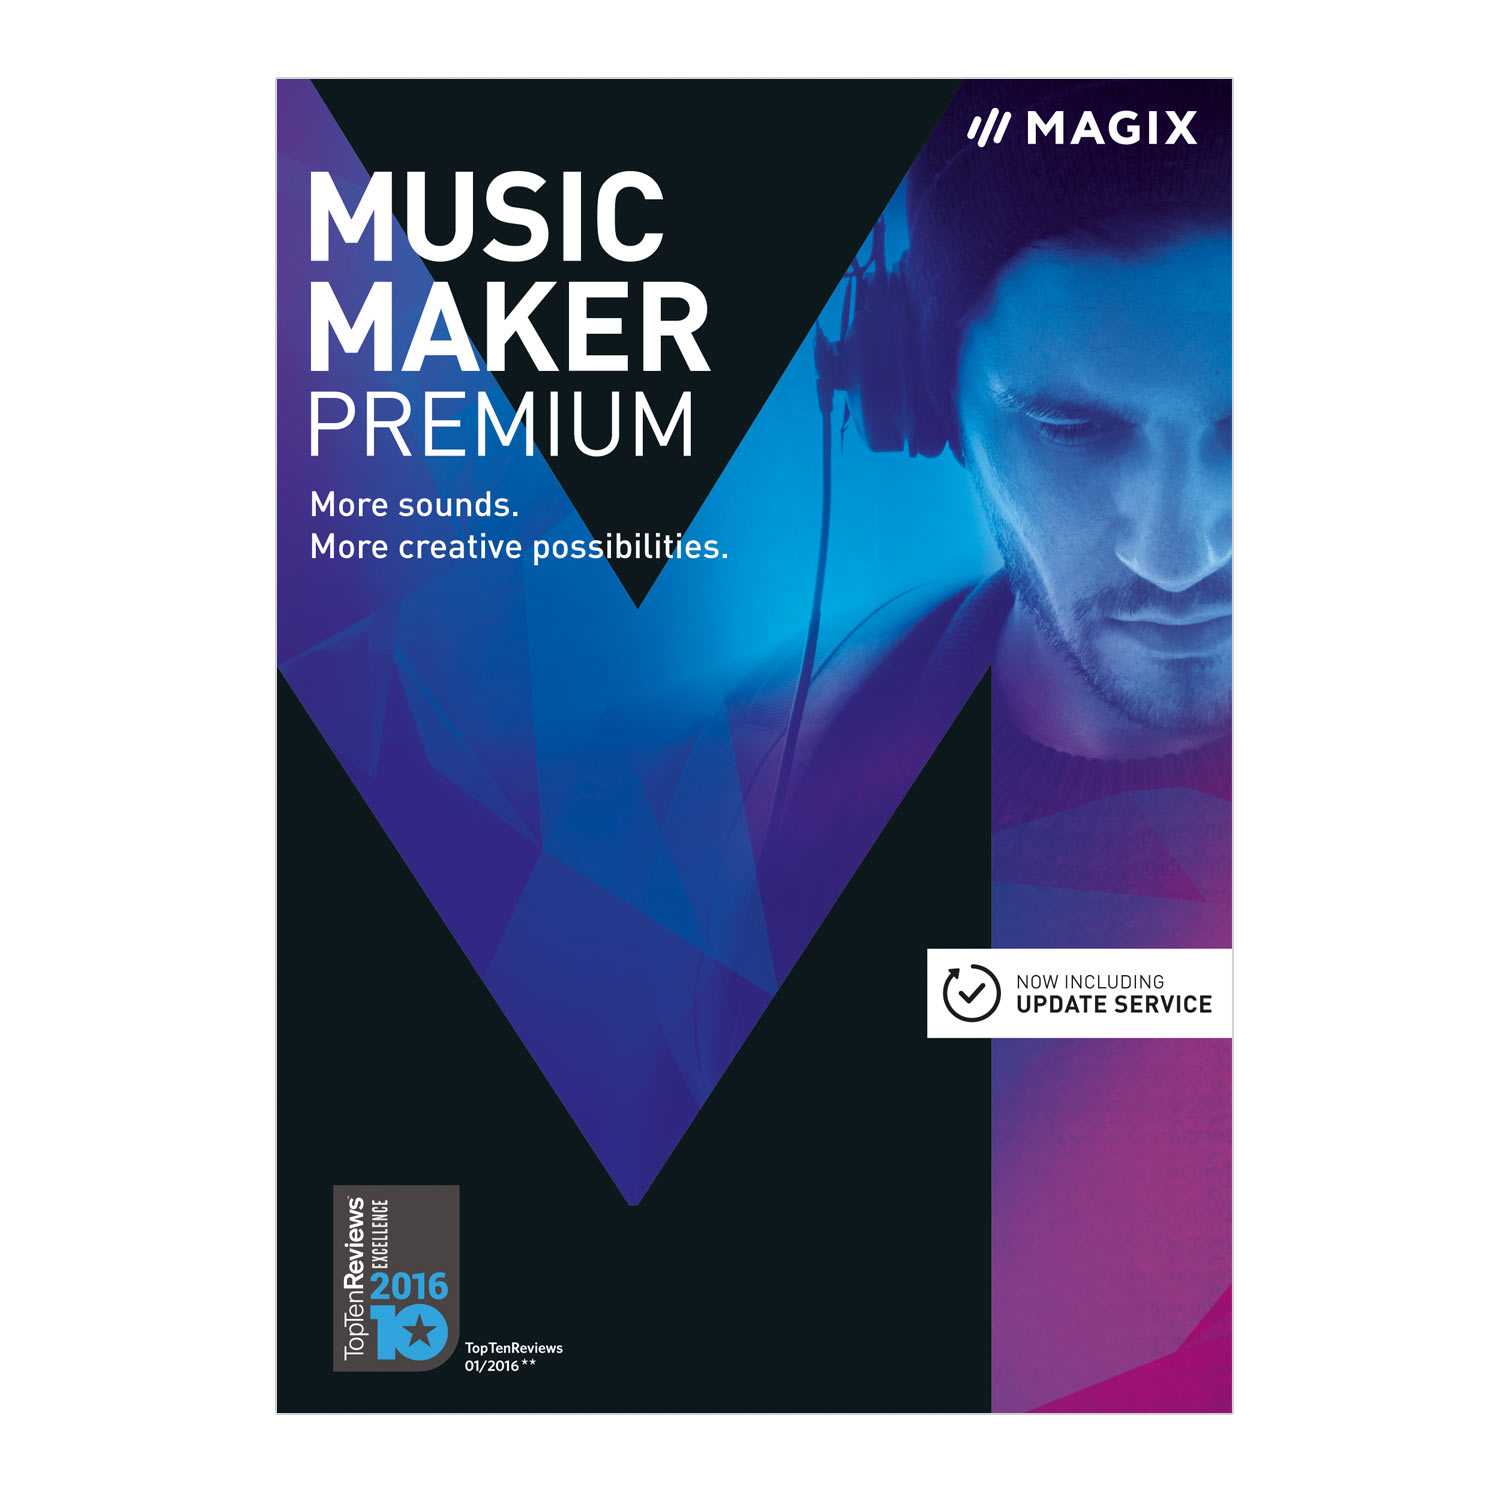 magix music maker serial number